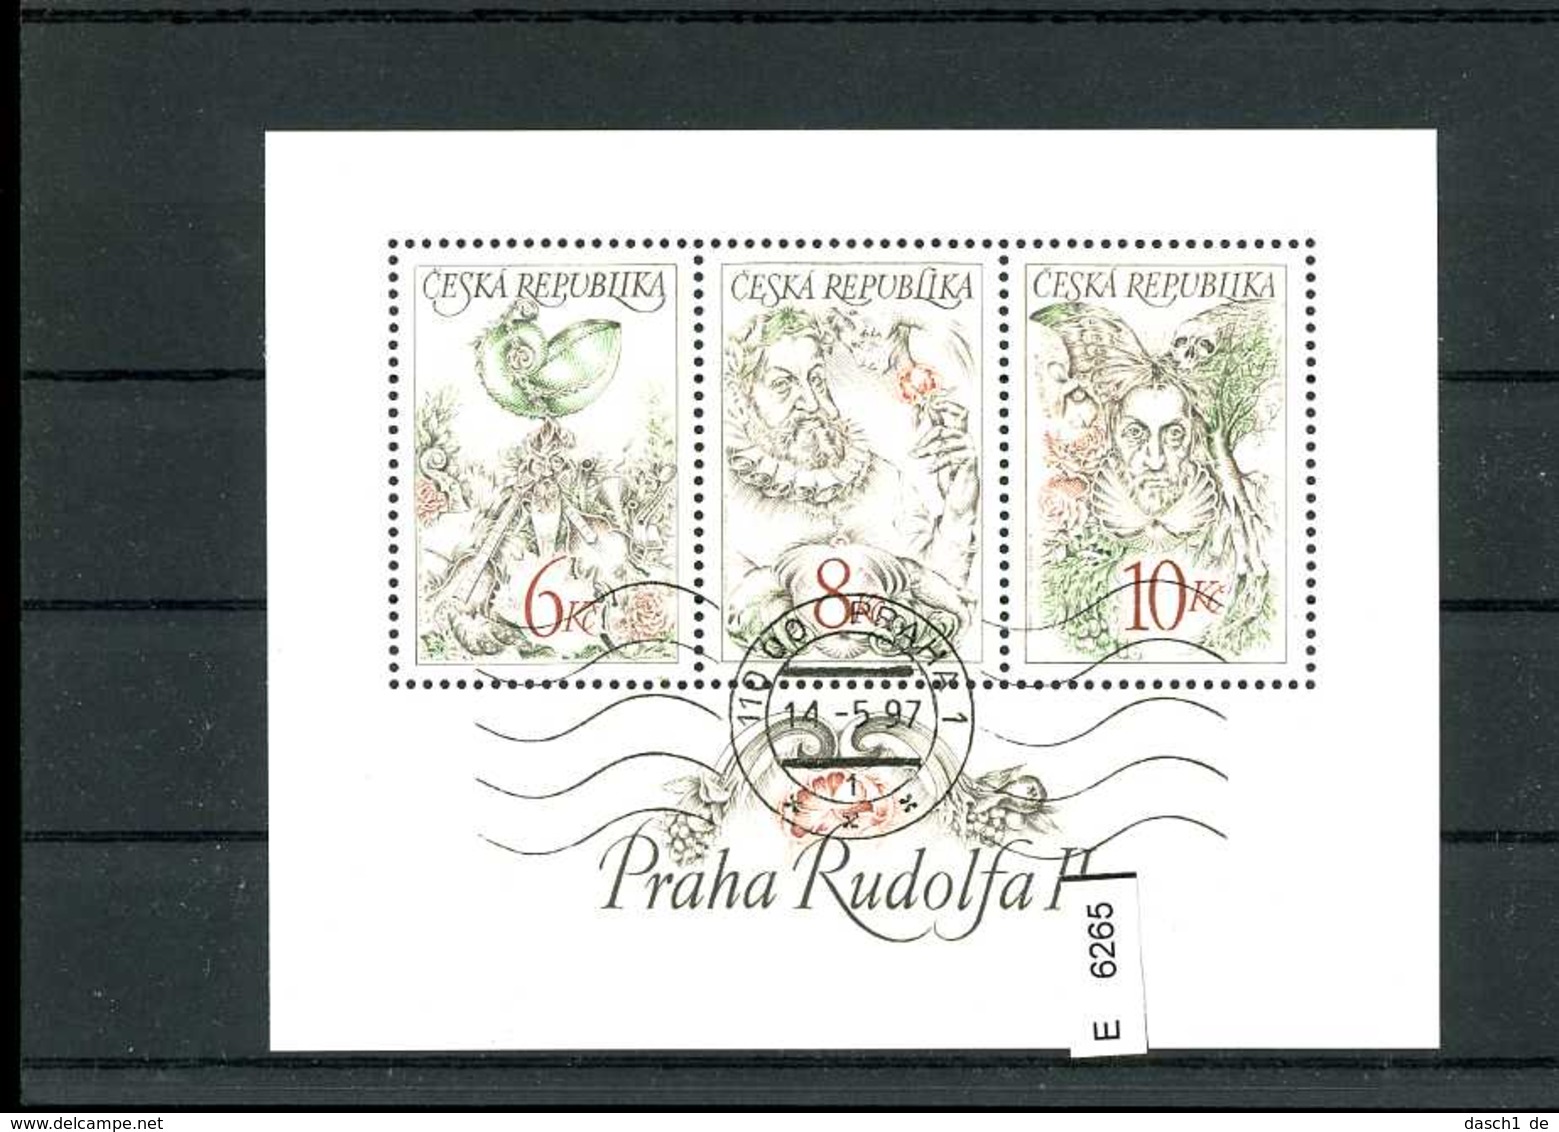 Tschechoslowakei, 14 Lose u.a. Postkarte mit SST und 221 - 226 auf Rückseite mit SST